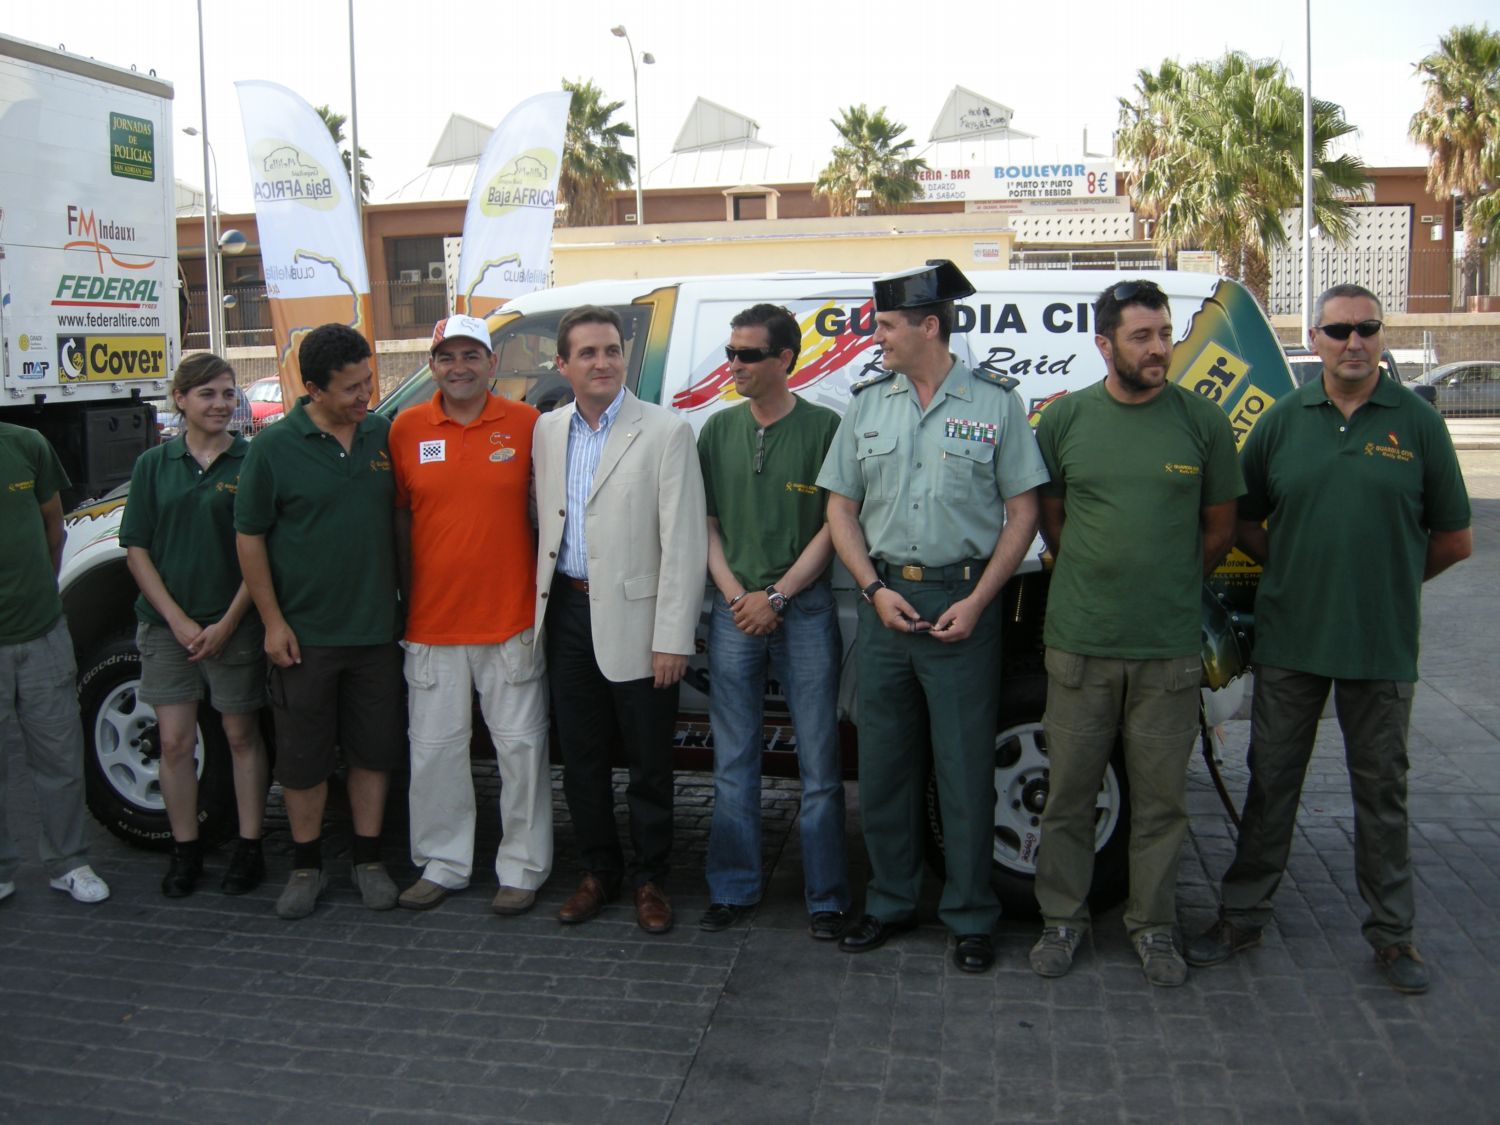 El vehículo de la Guardia Civil que competirá en el “Ciudad de Melilla 4X4” ha sido presentado a la prensa por el Delegado del Gobierno. 